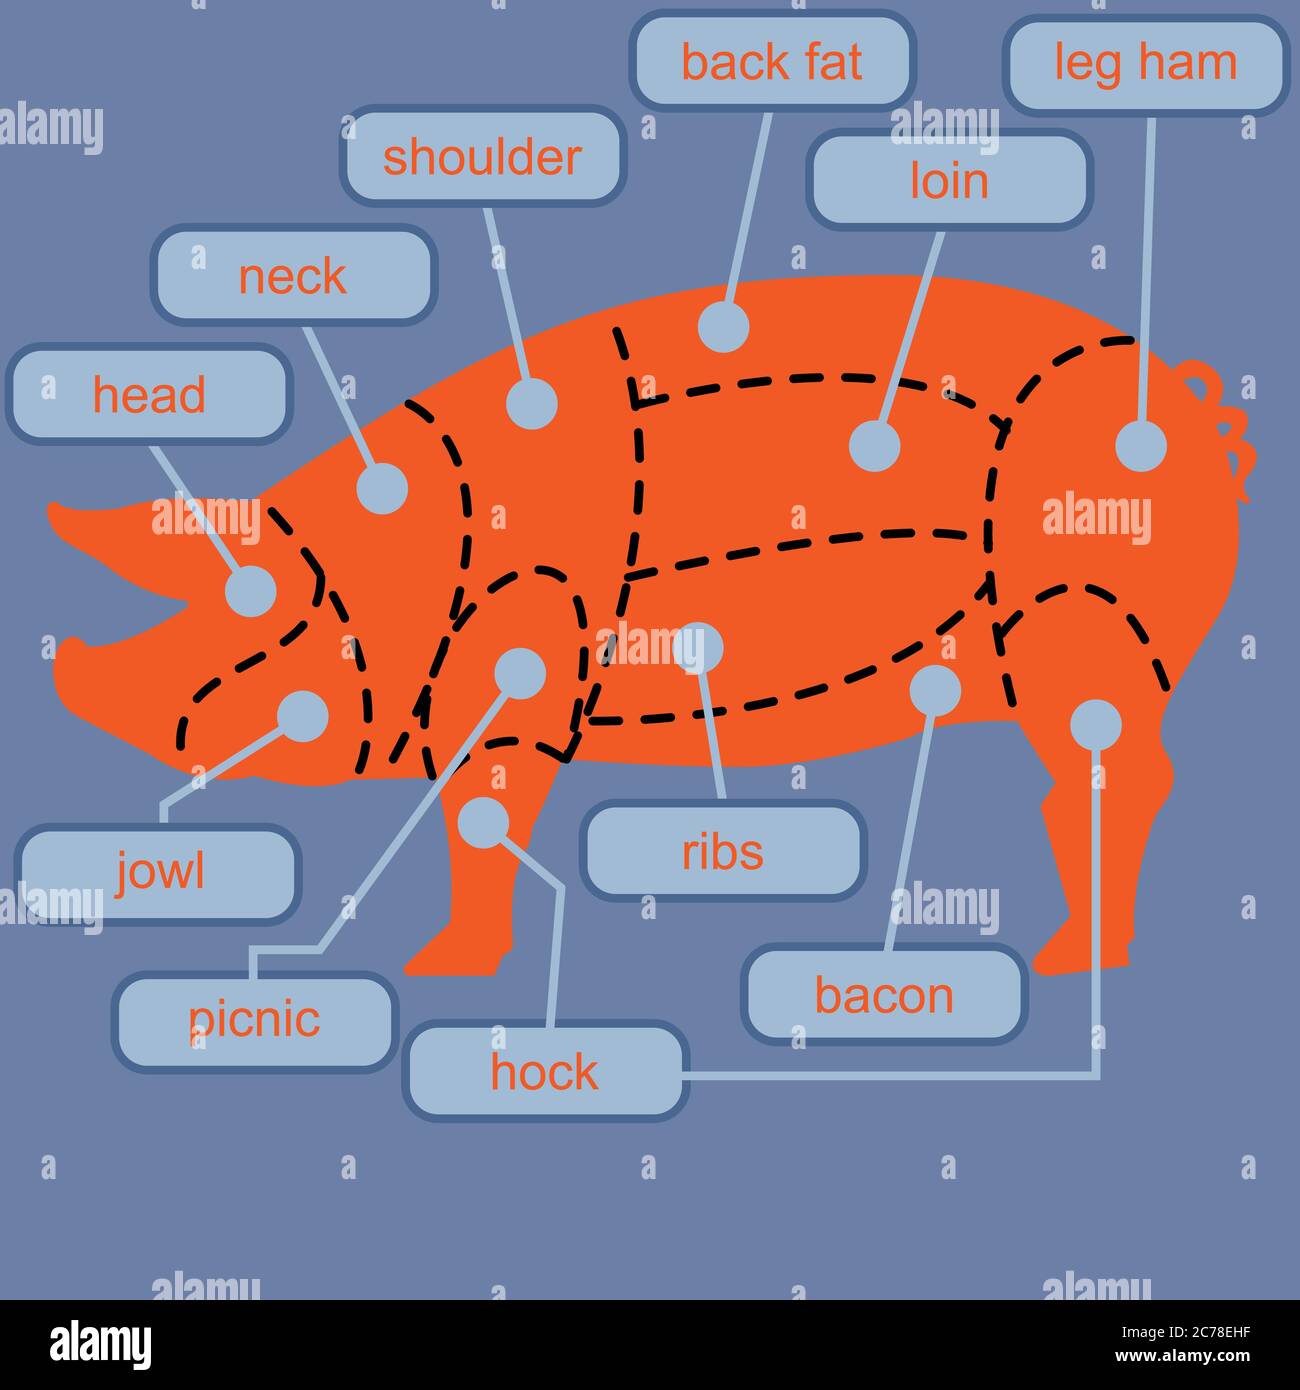 pig carving diagram